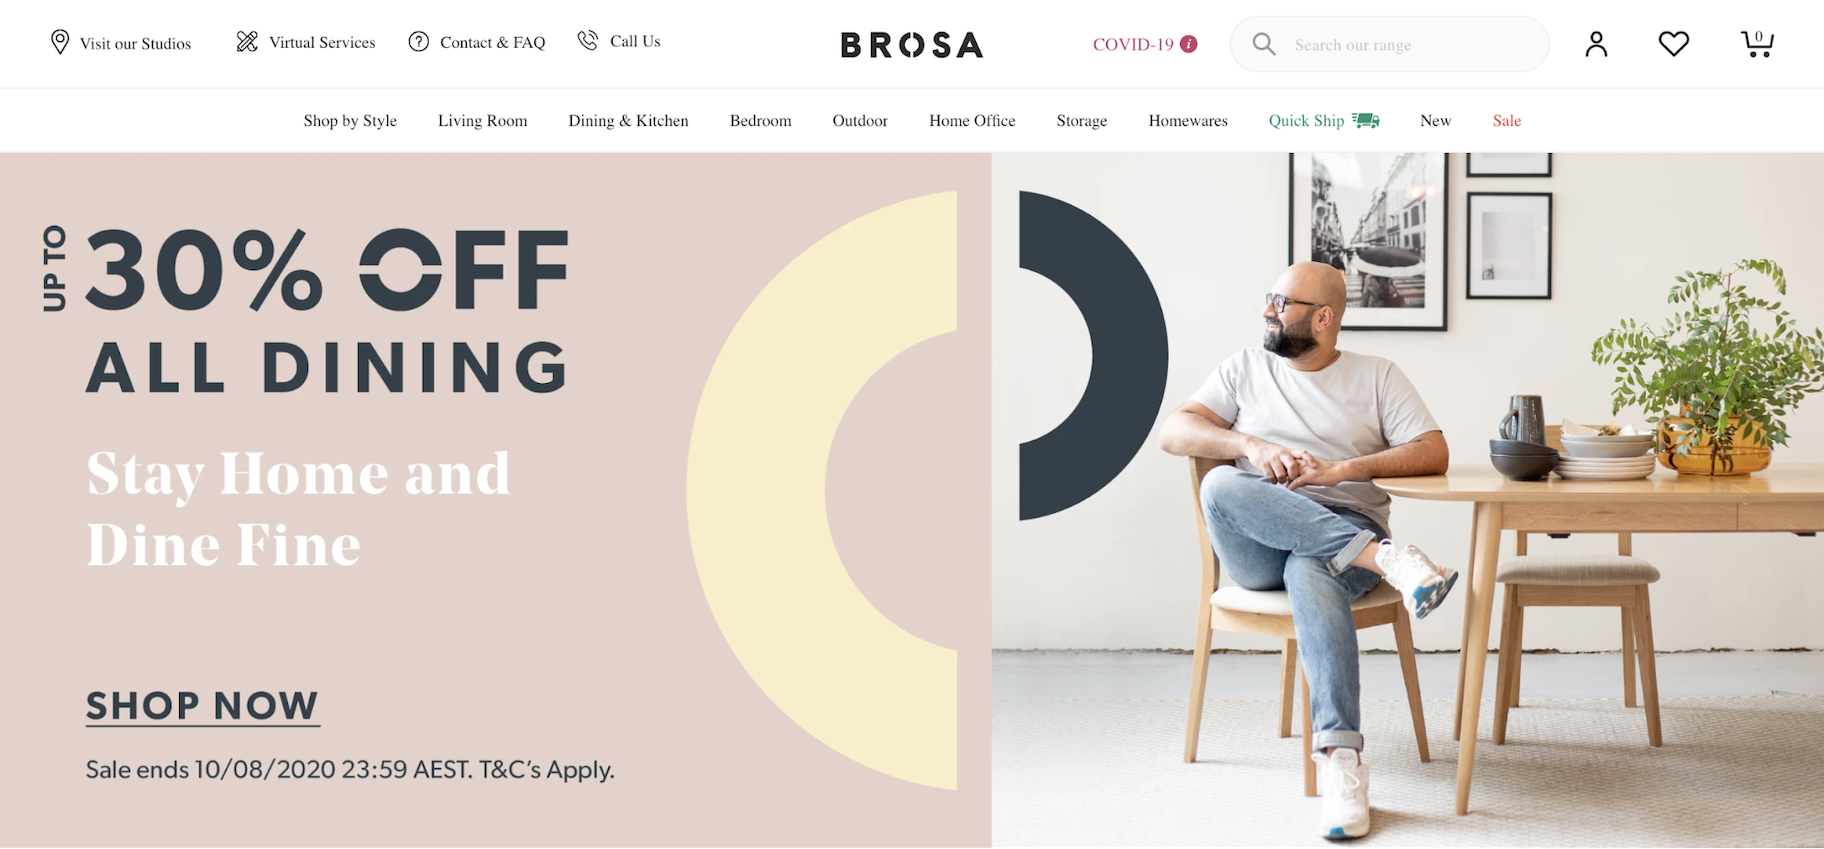 小型商业网站例子:Brosa